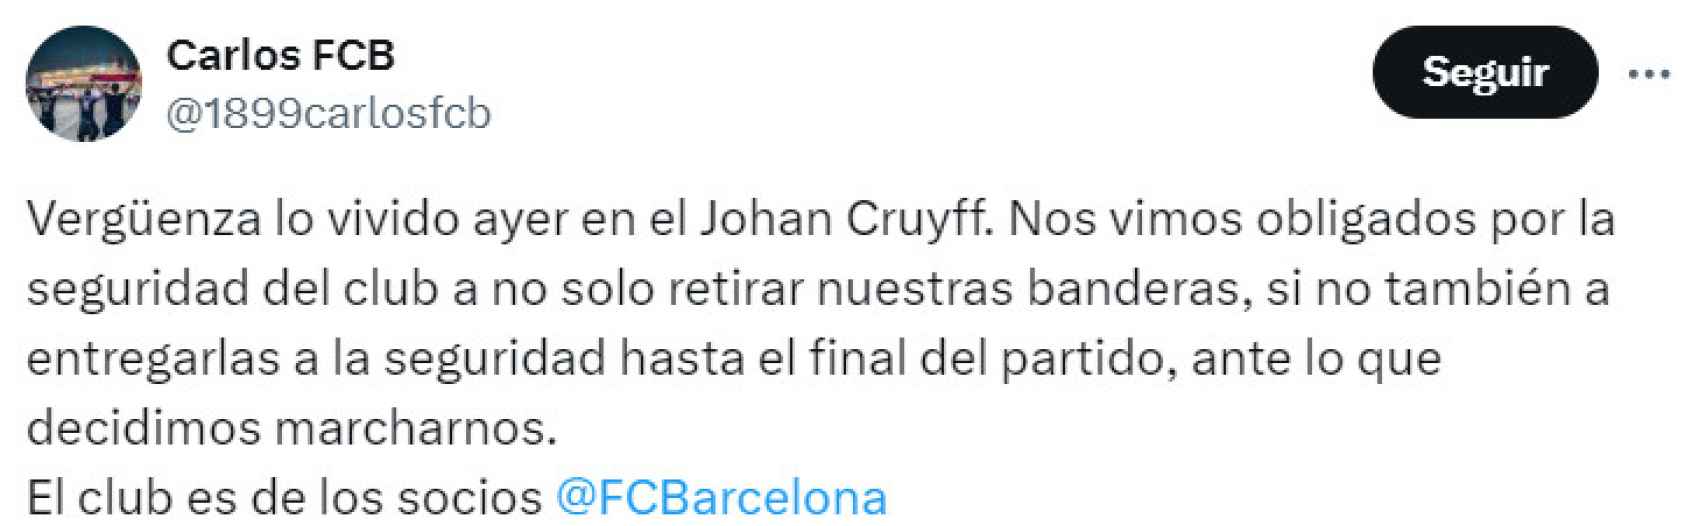 Un socio del Barça denuncia que le confiscaron las banderas en el Estadi Johan Cruyff